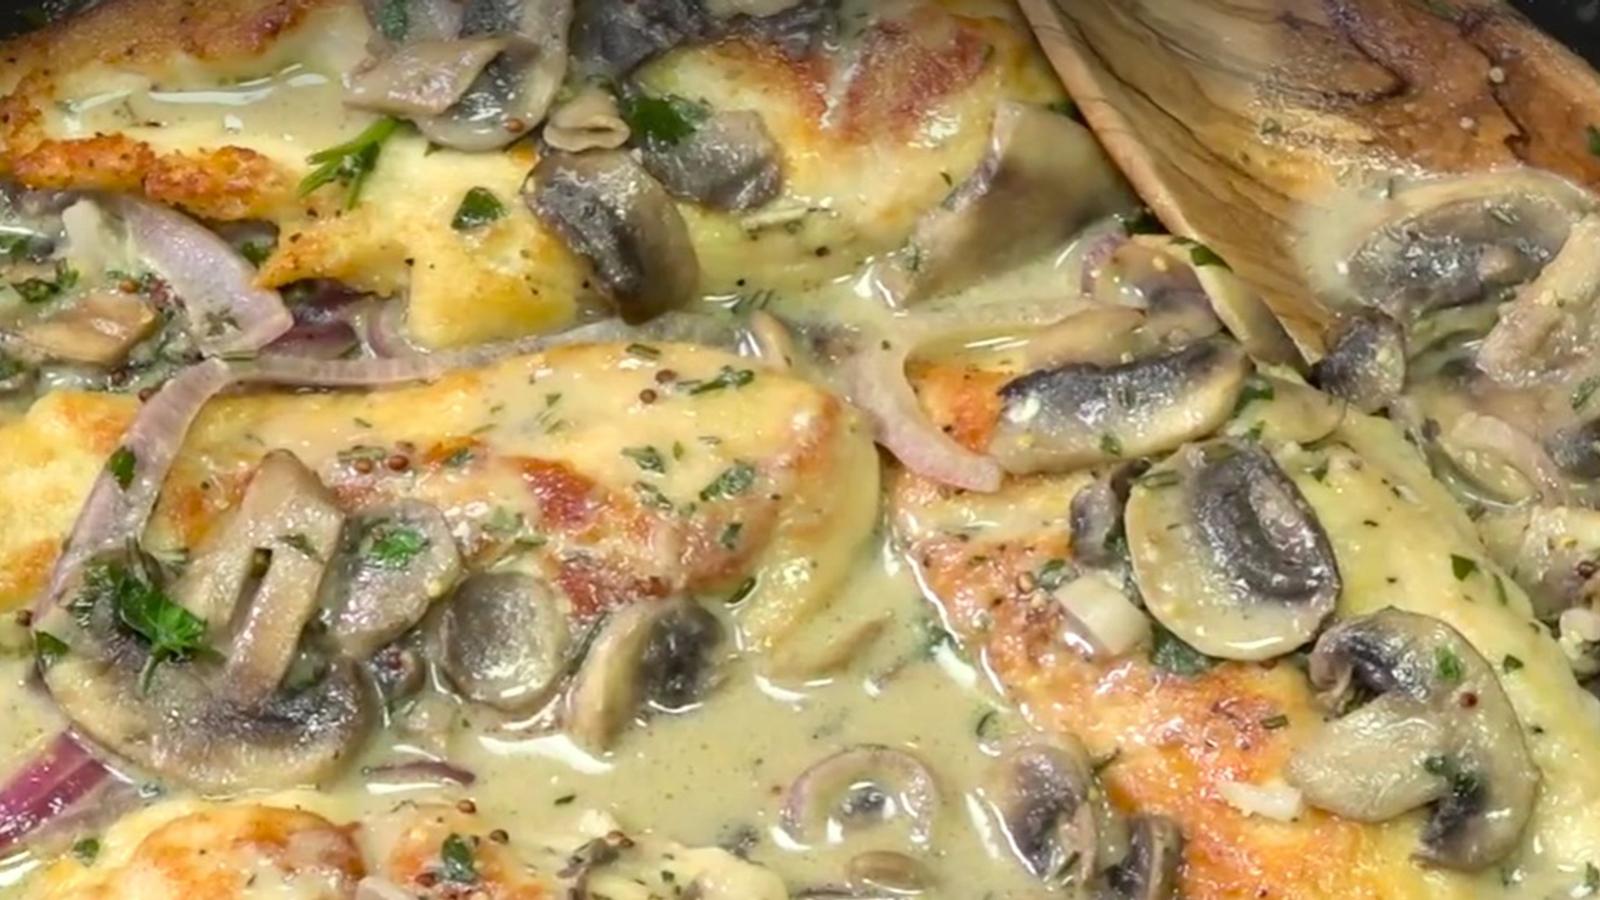 Une merveille culinaire! Les poitrines de poulet, sauce crémeuse aux champignons et Dijon